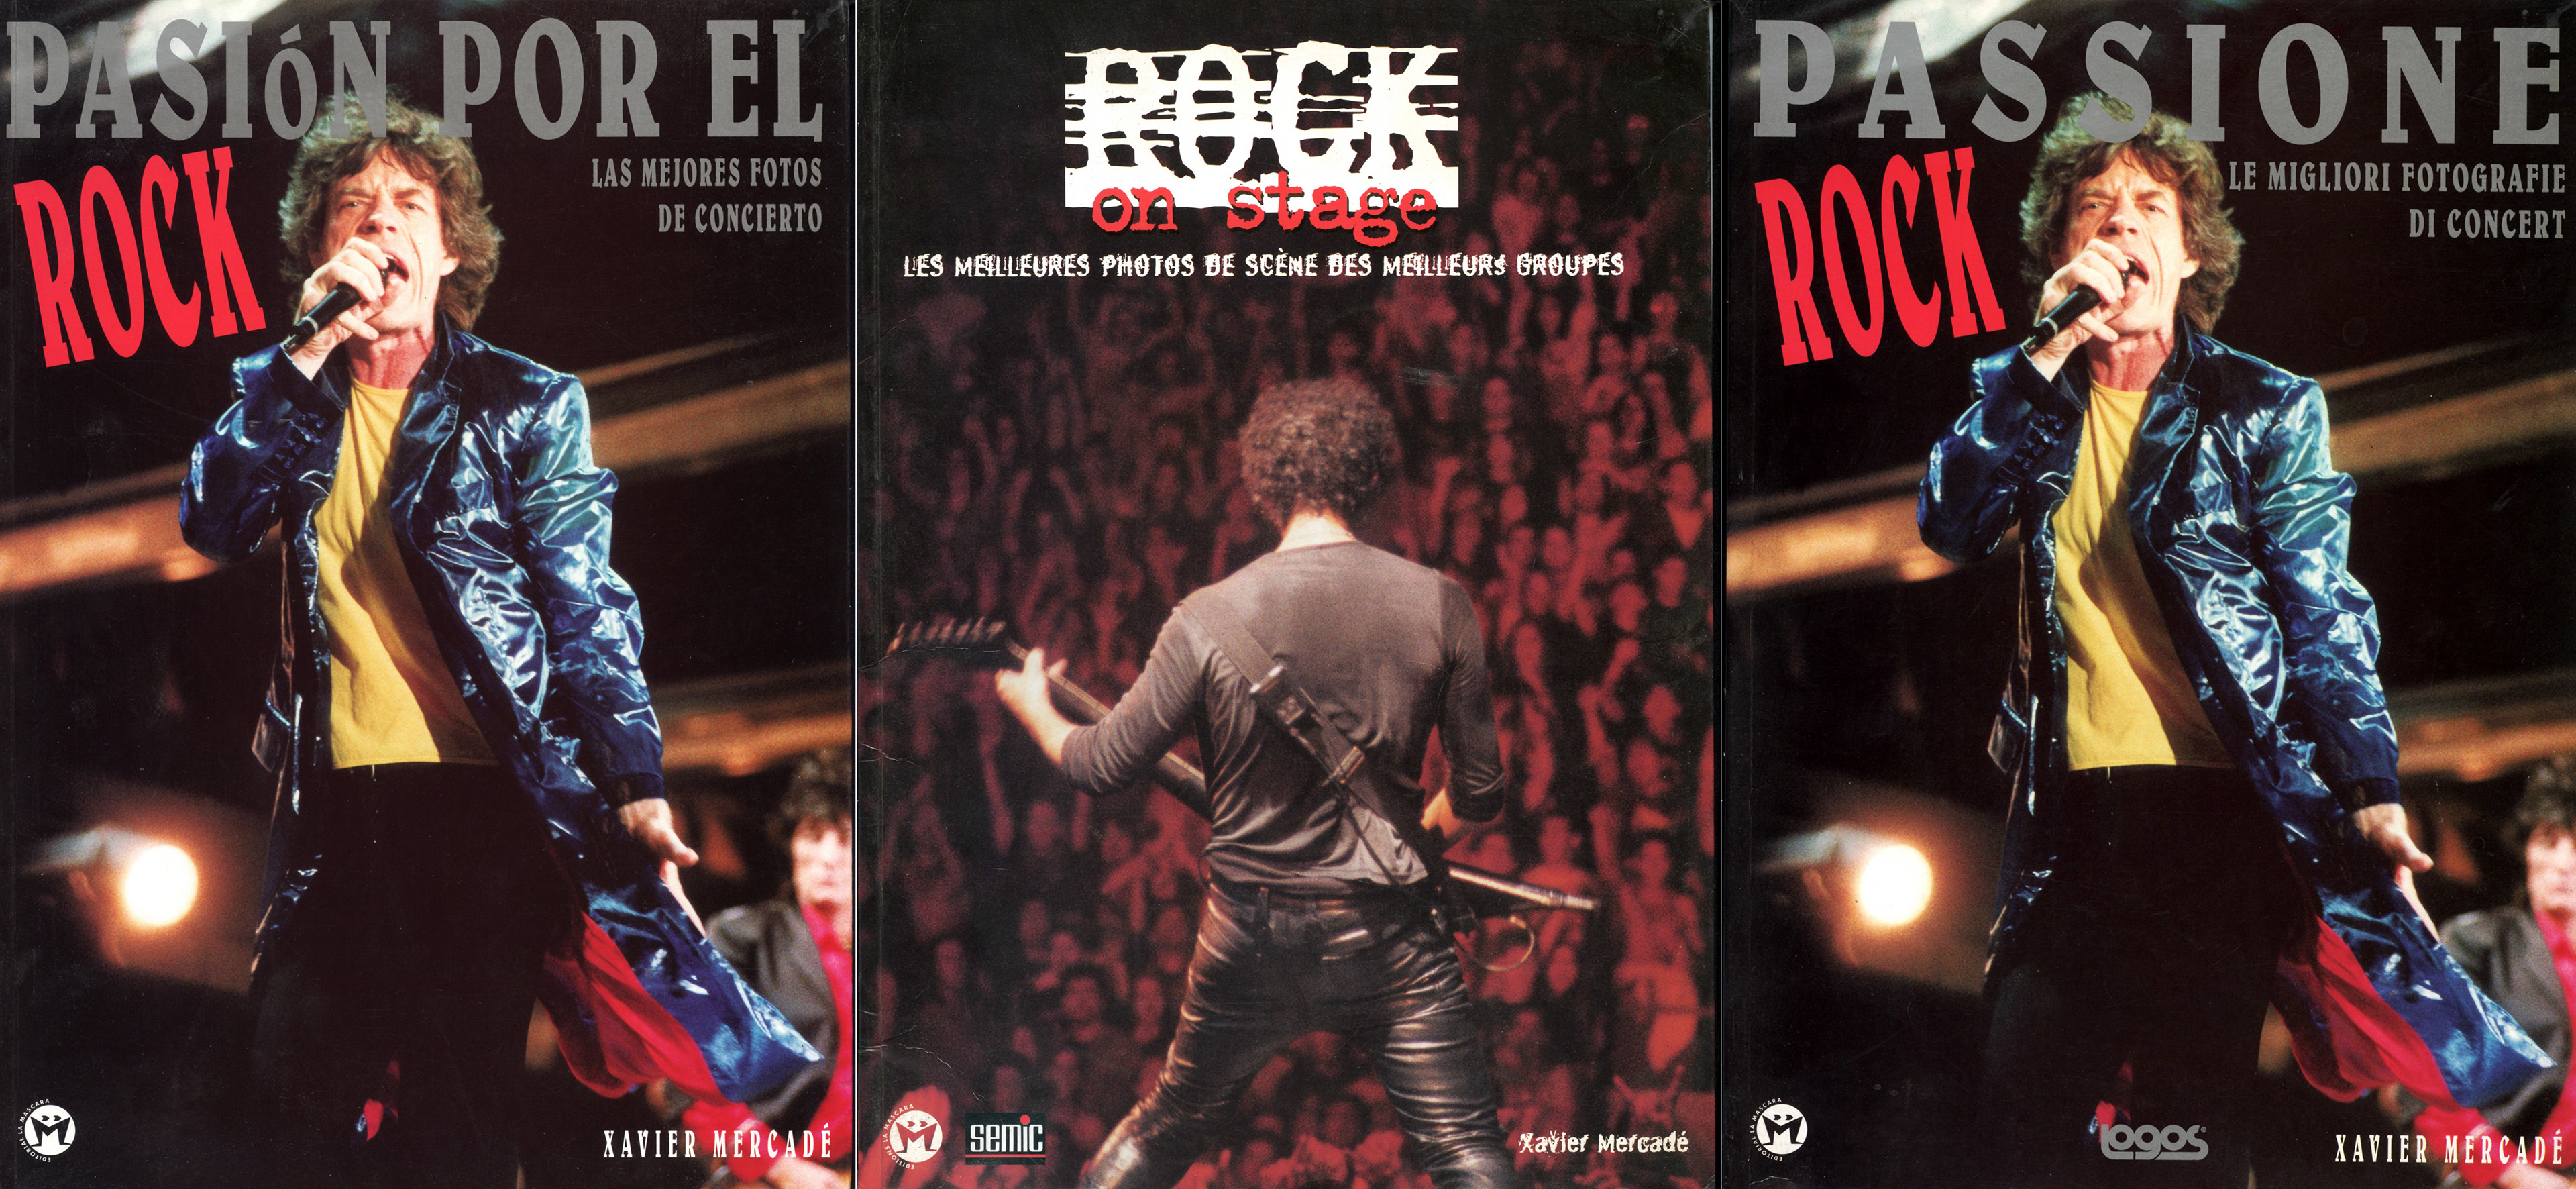 pasion por el rock019